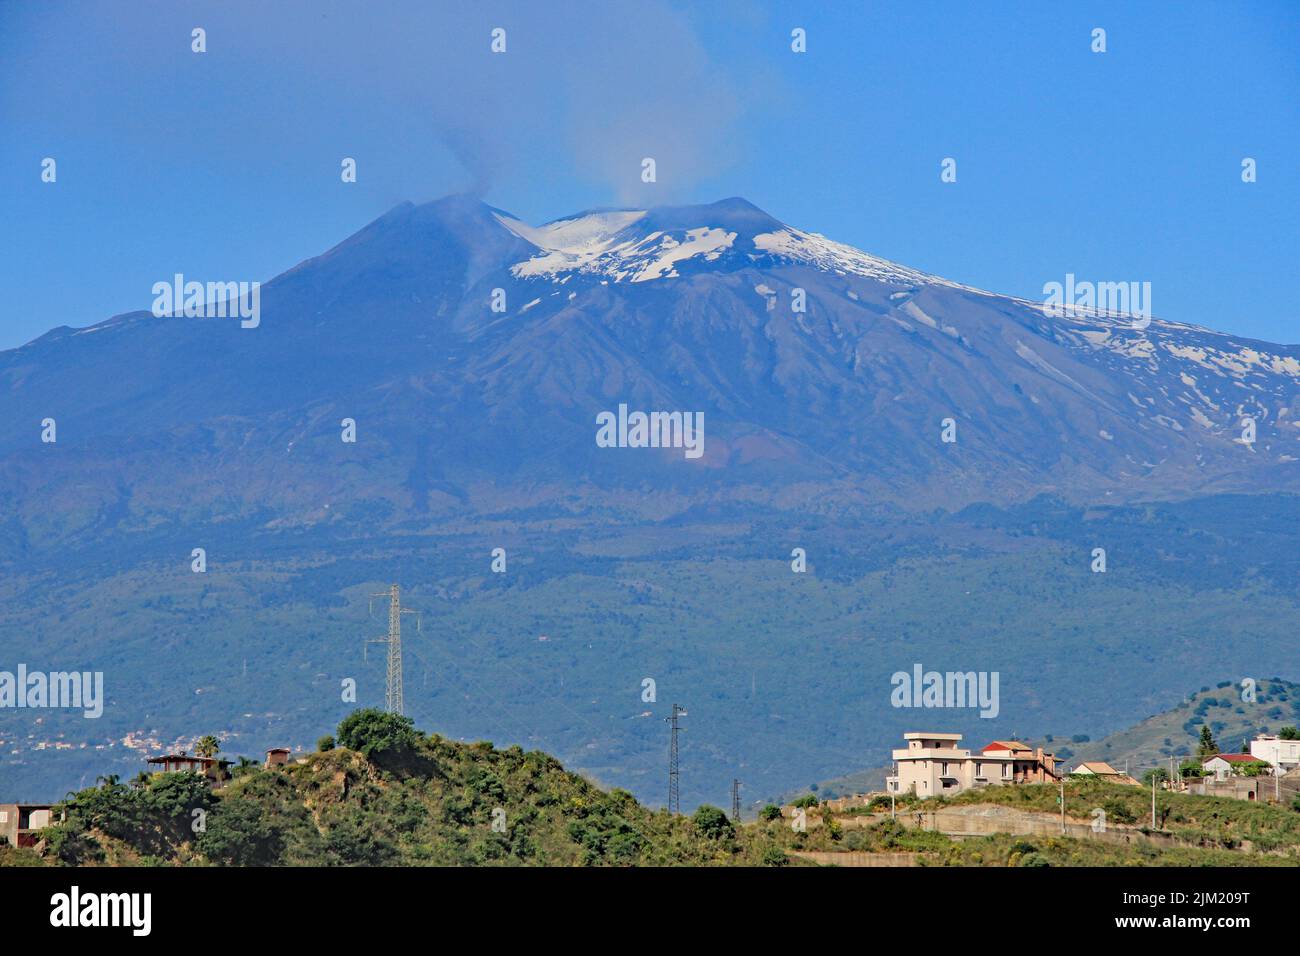 Views around Taormina, Sicily Stock Photo